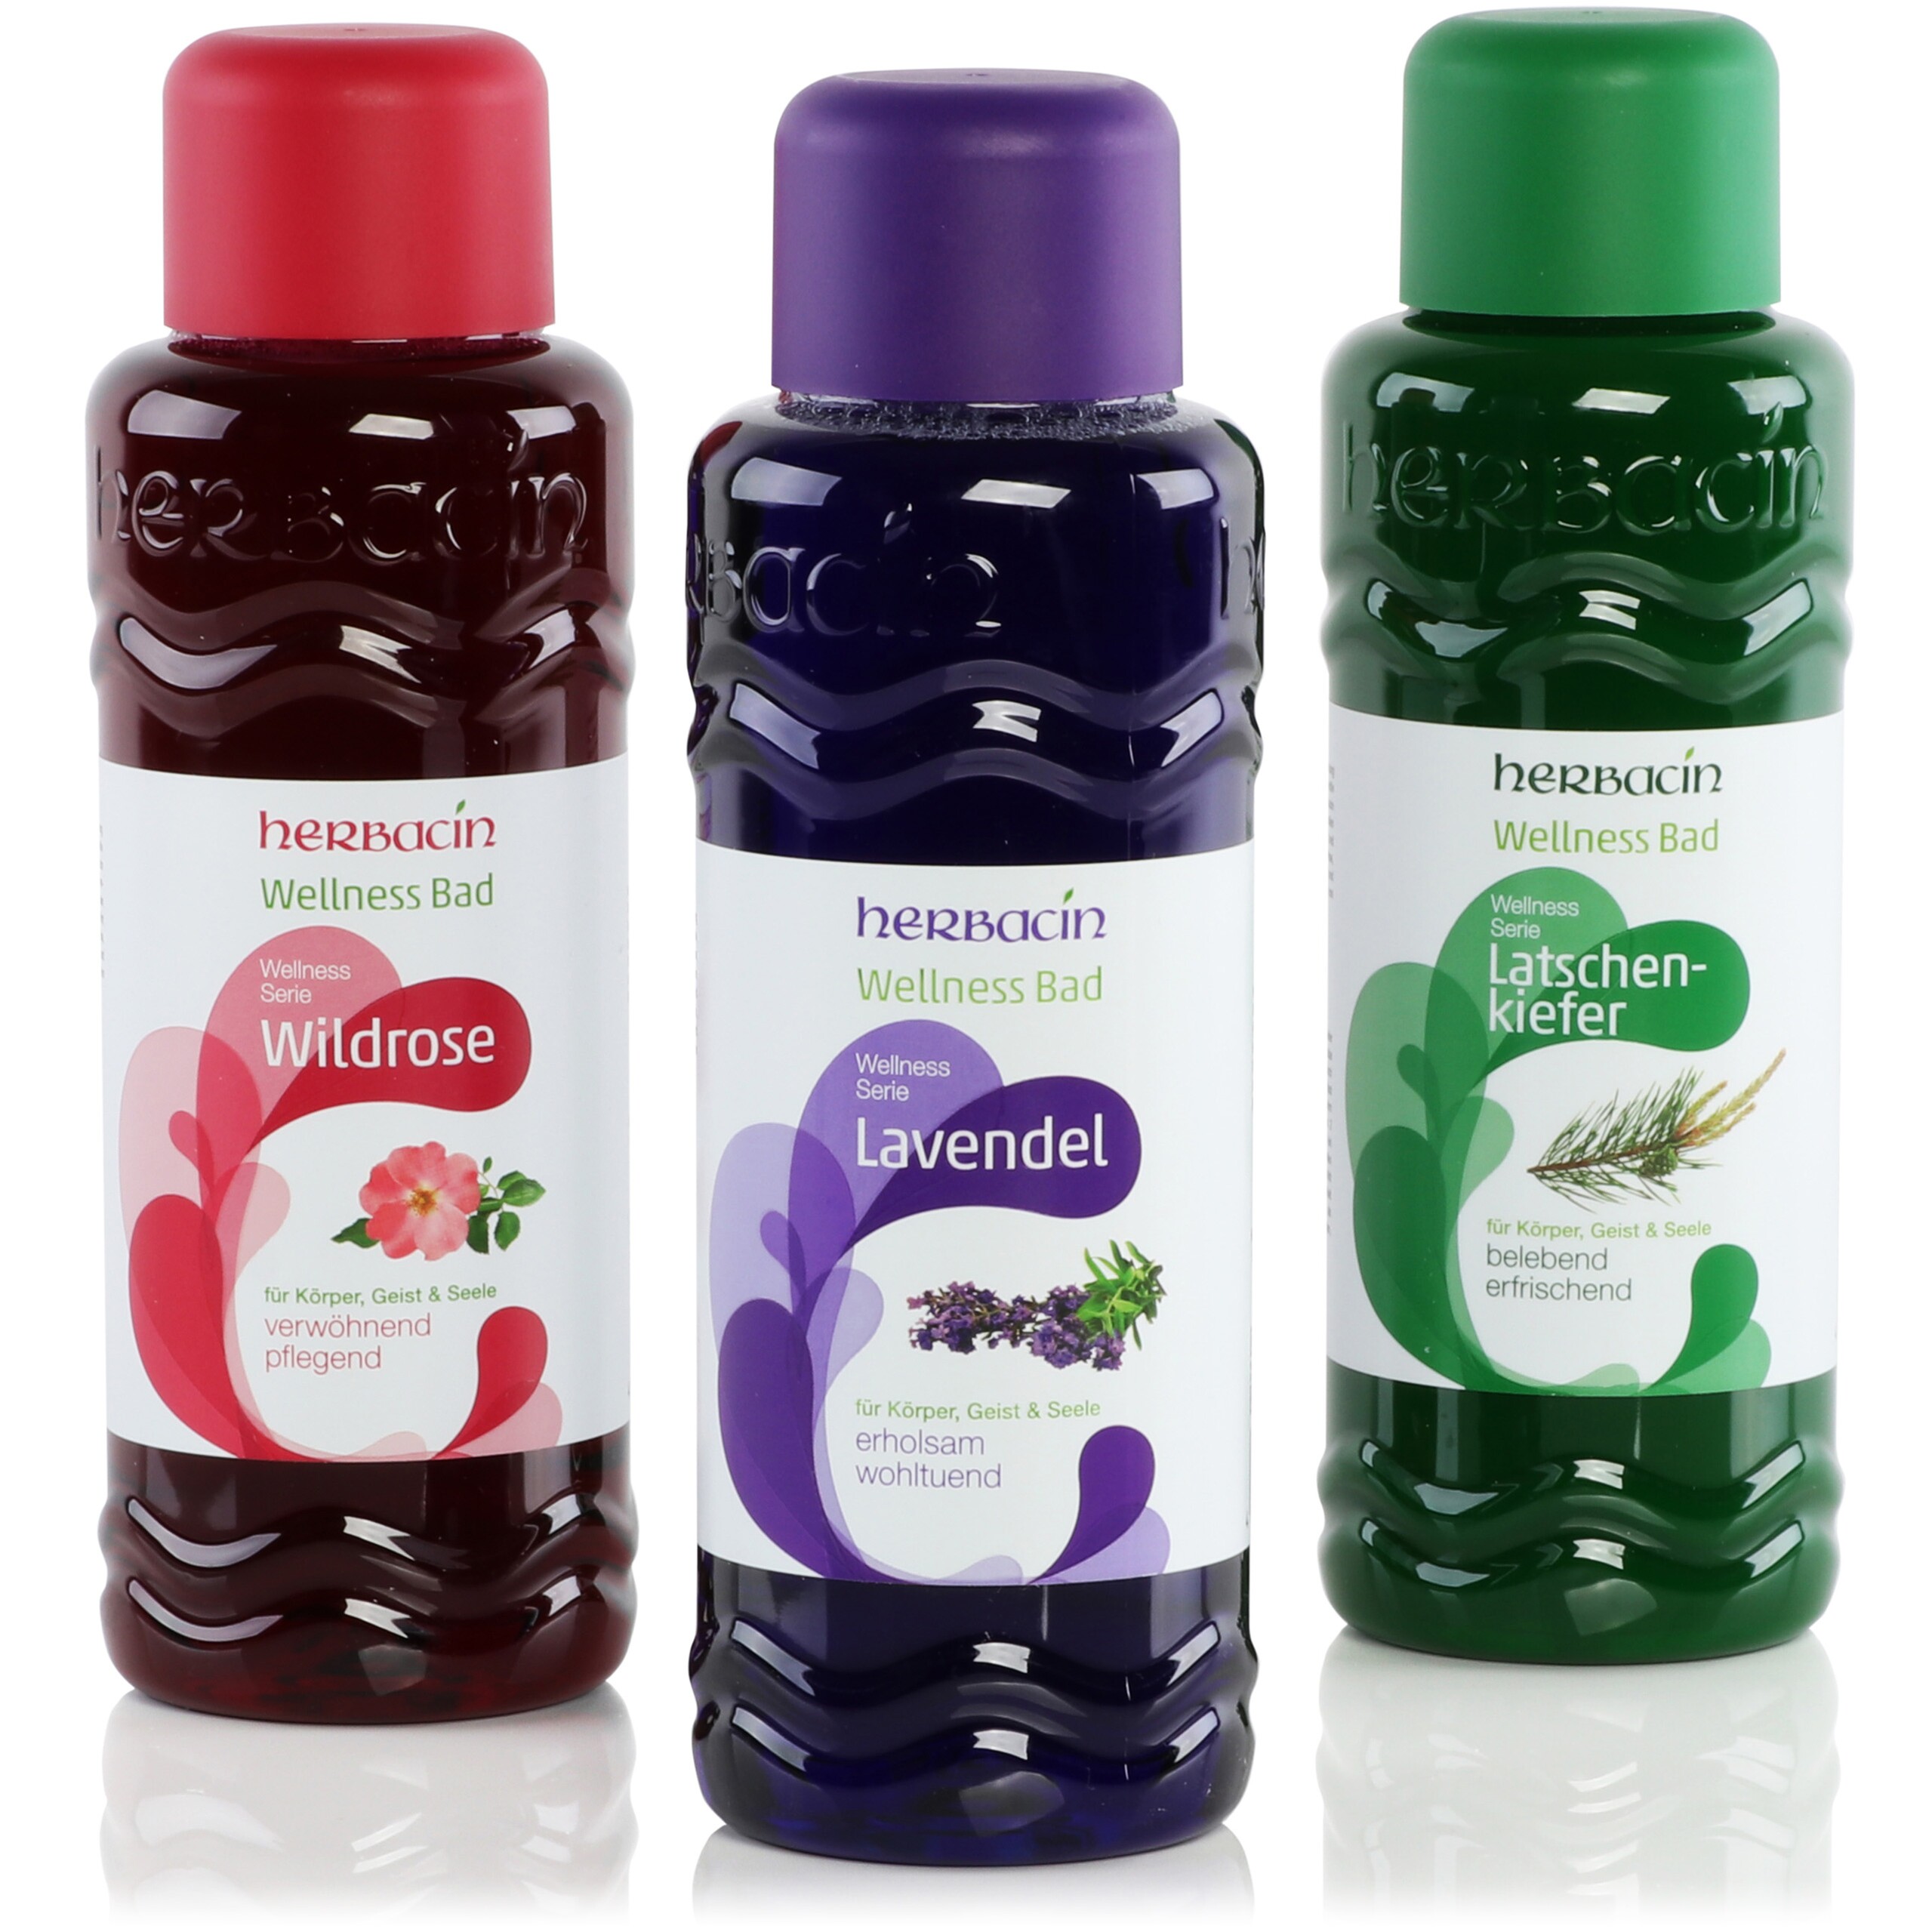 Drei Flaschen Wellness-Bad mit rot, violett und grün bedruckten Dekorationsetiketten der Marke Herbacin.